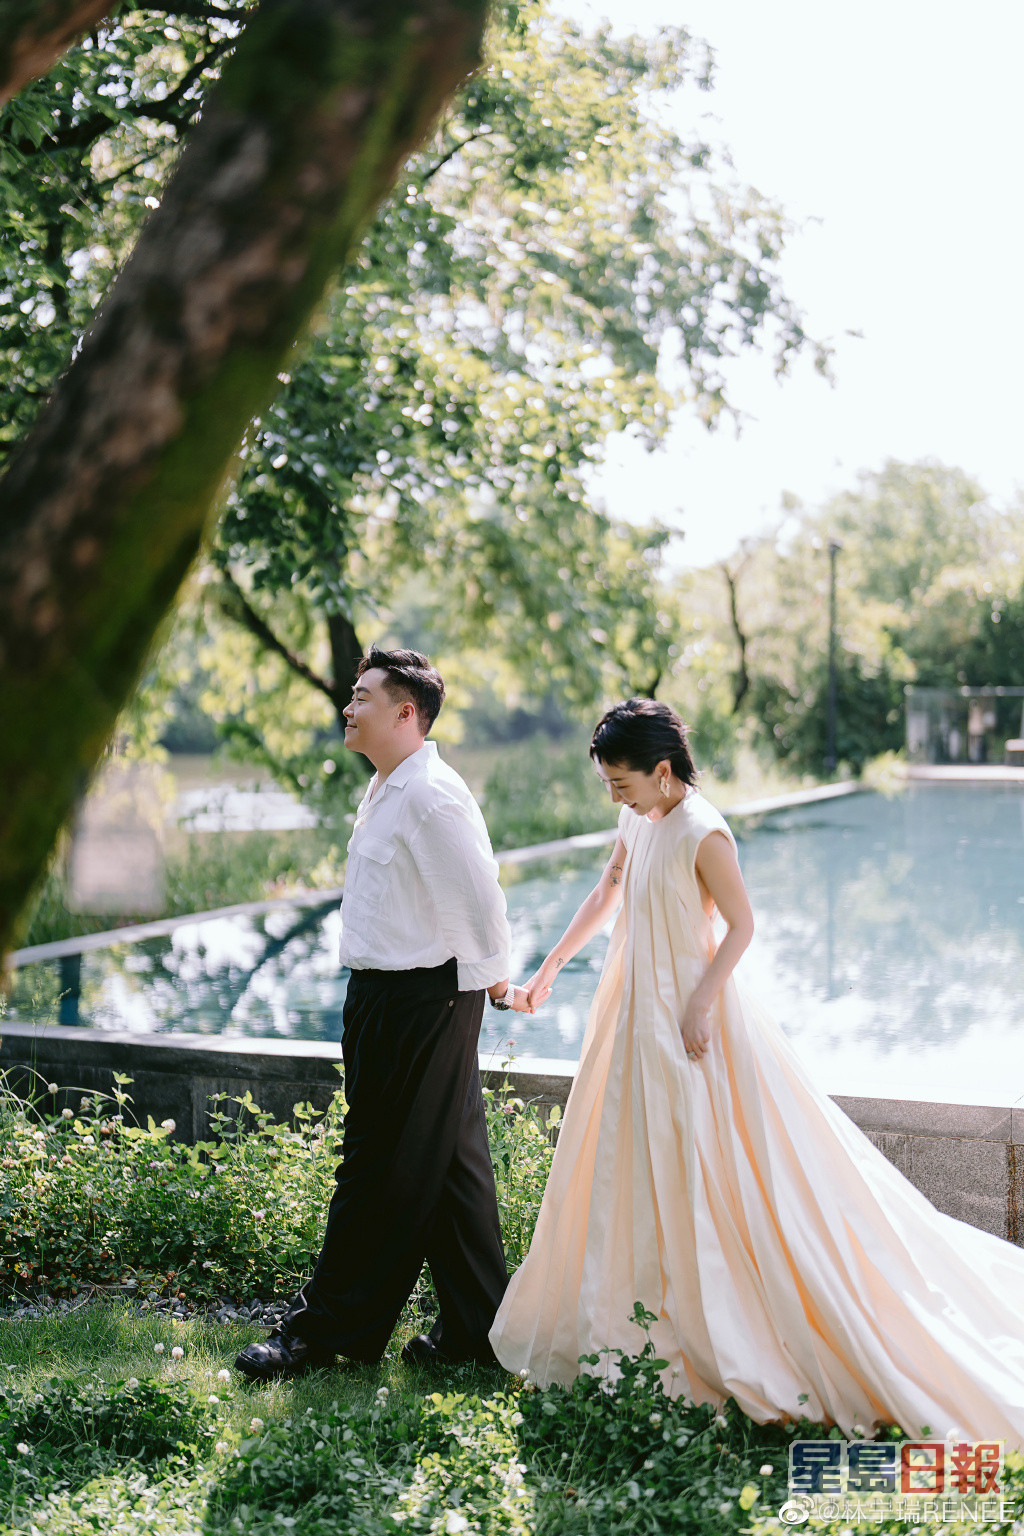 郝劭文太太今在微博公開更多婚禮花絮照。